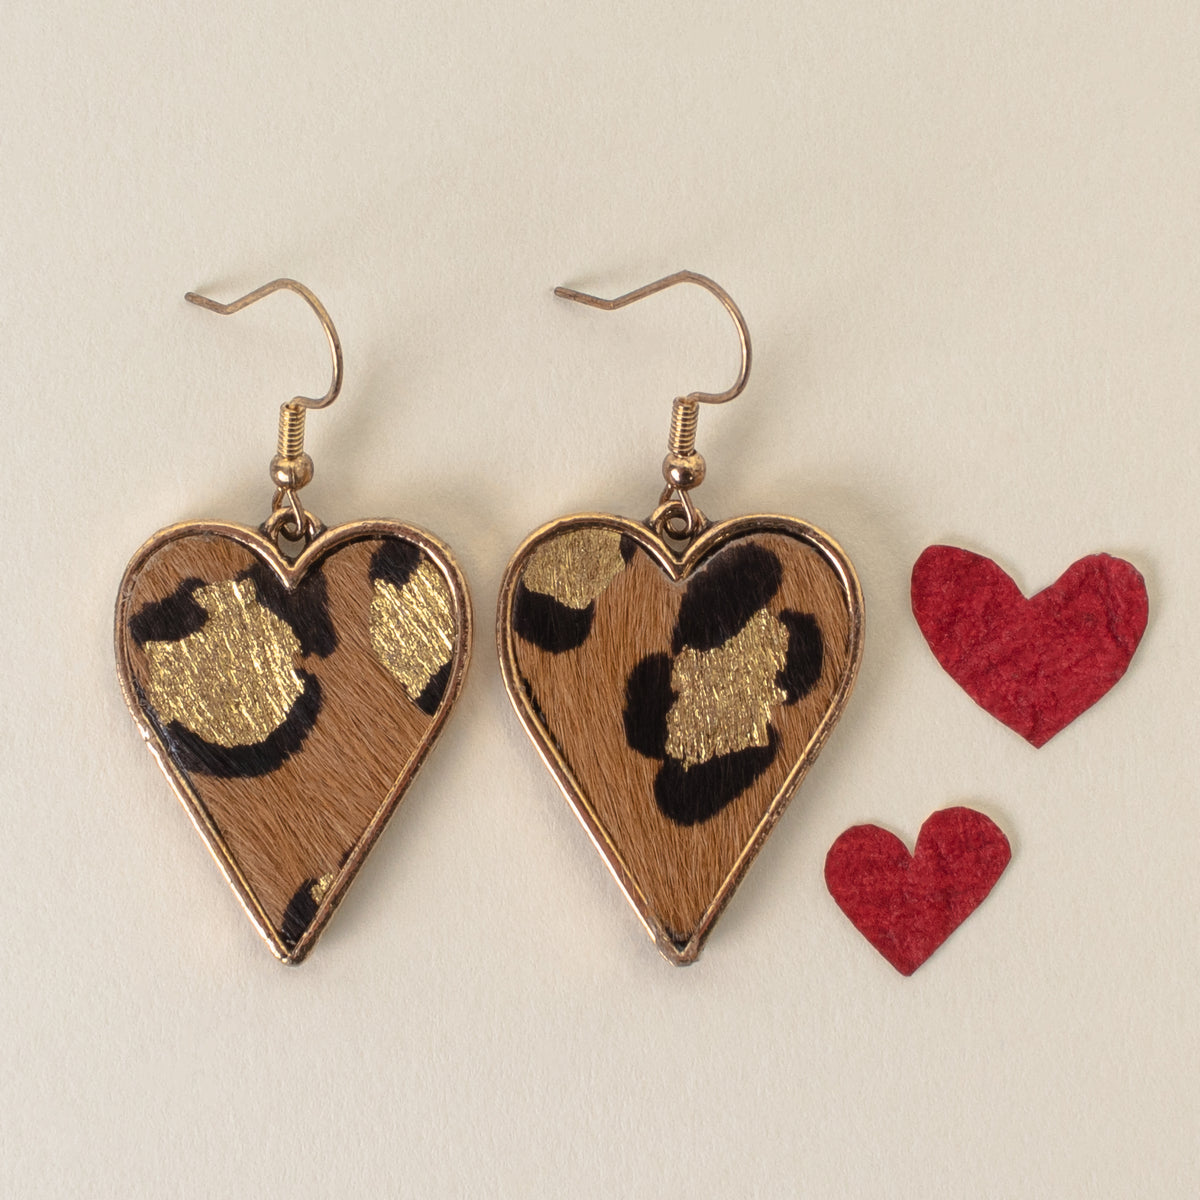 734030 - Leopard Heart Earrings - Leopard - Fashion Jewelry Wholesale